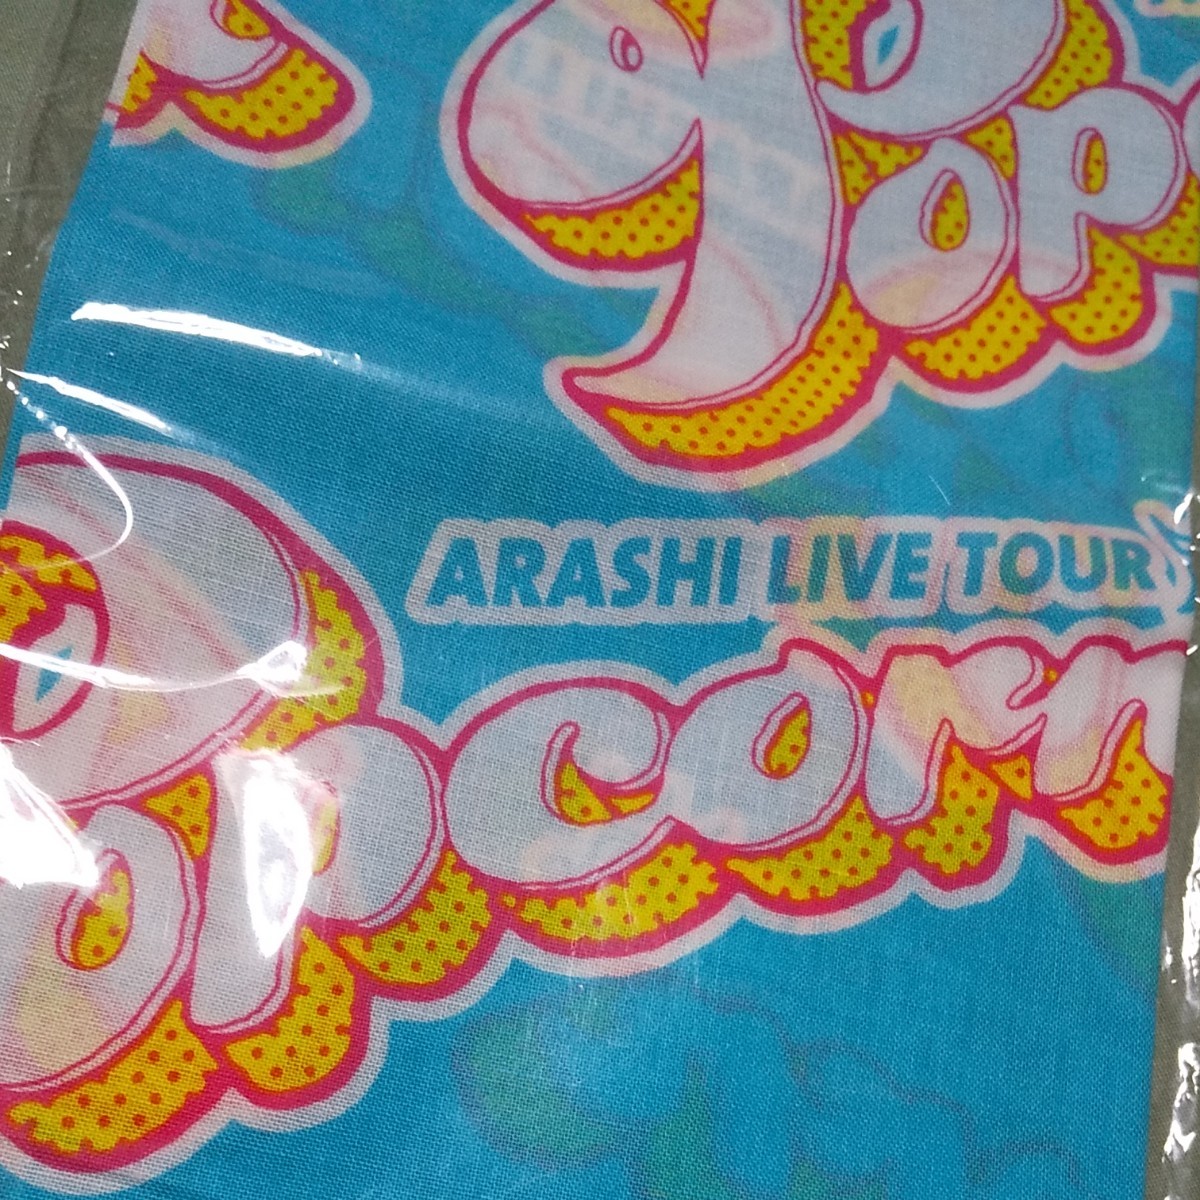 嵐 ARASHI LIVE Popcorn TOUR ハンカチ バンダナ ジャニーズ グッズ 嵐 日本 スカーフ アイドル 歌手 